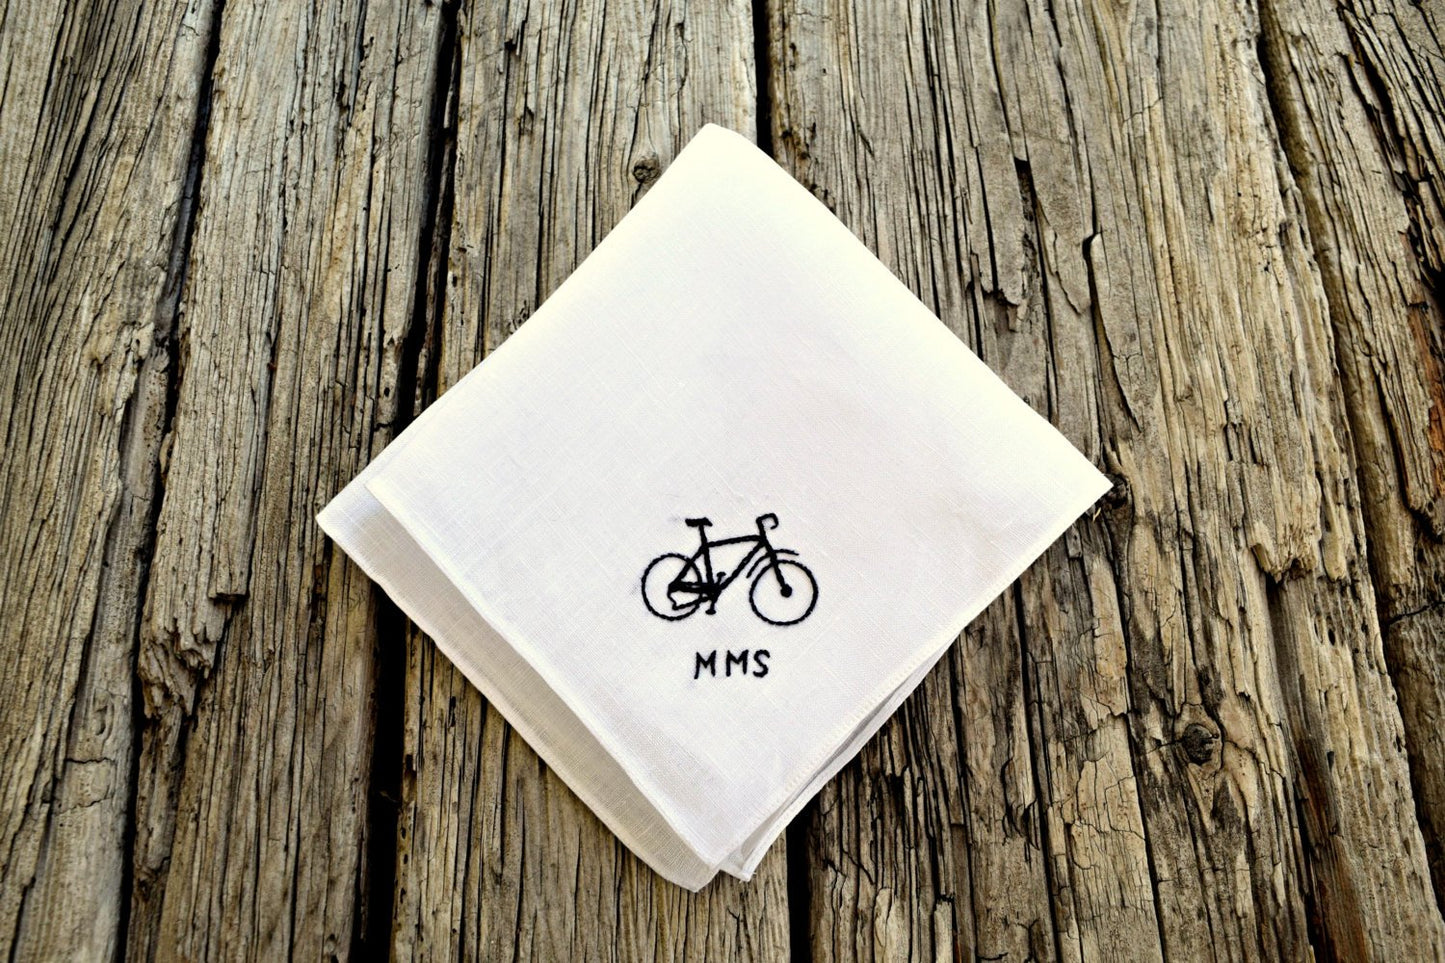 White Irish linen handkerchief embroidered with bike and initials in one corner